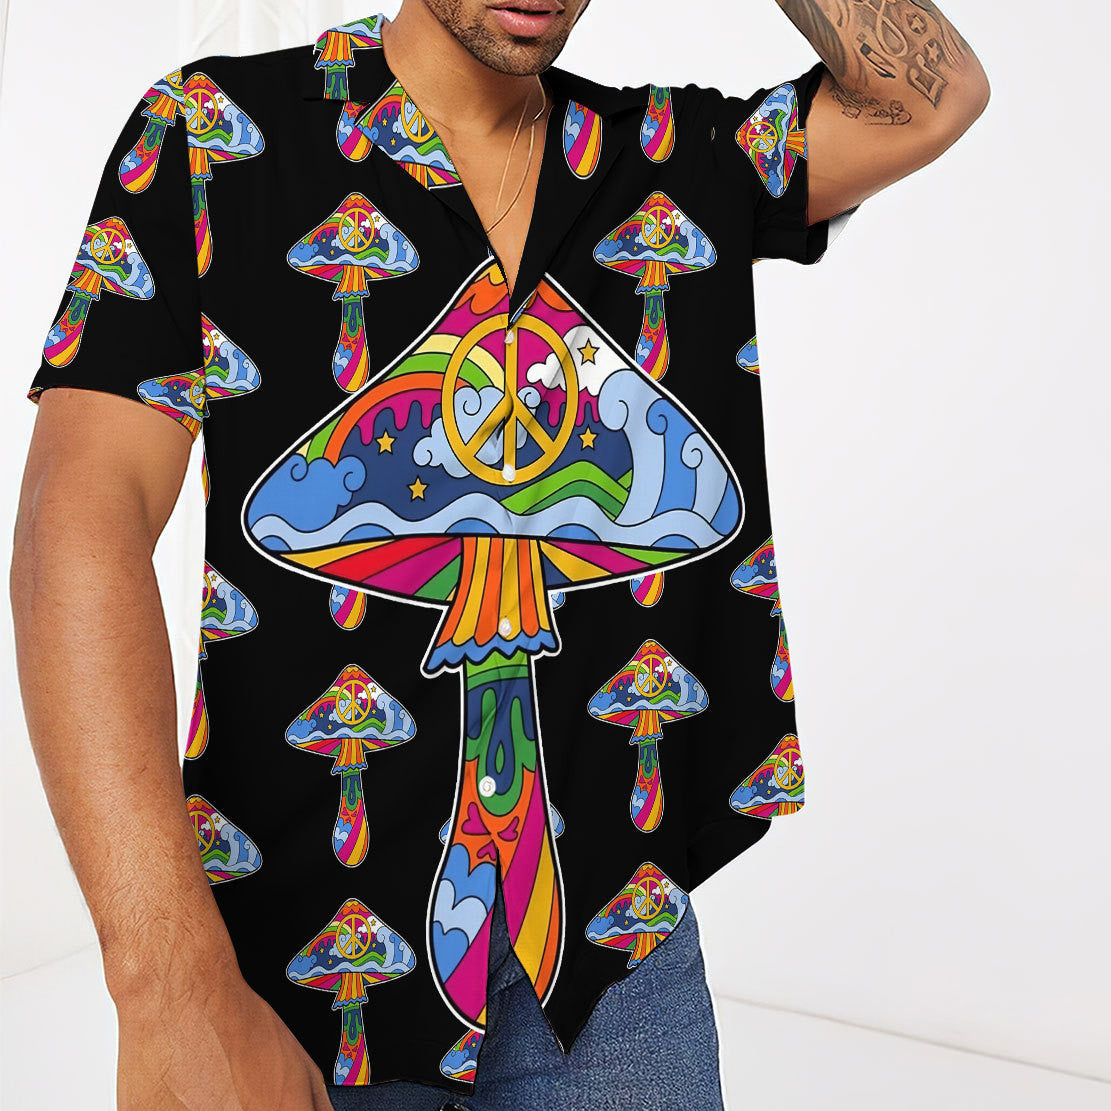 Hippie Mushroom Hawaiian Shirt